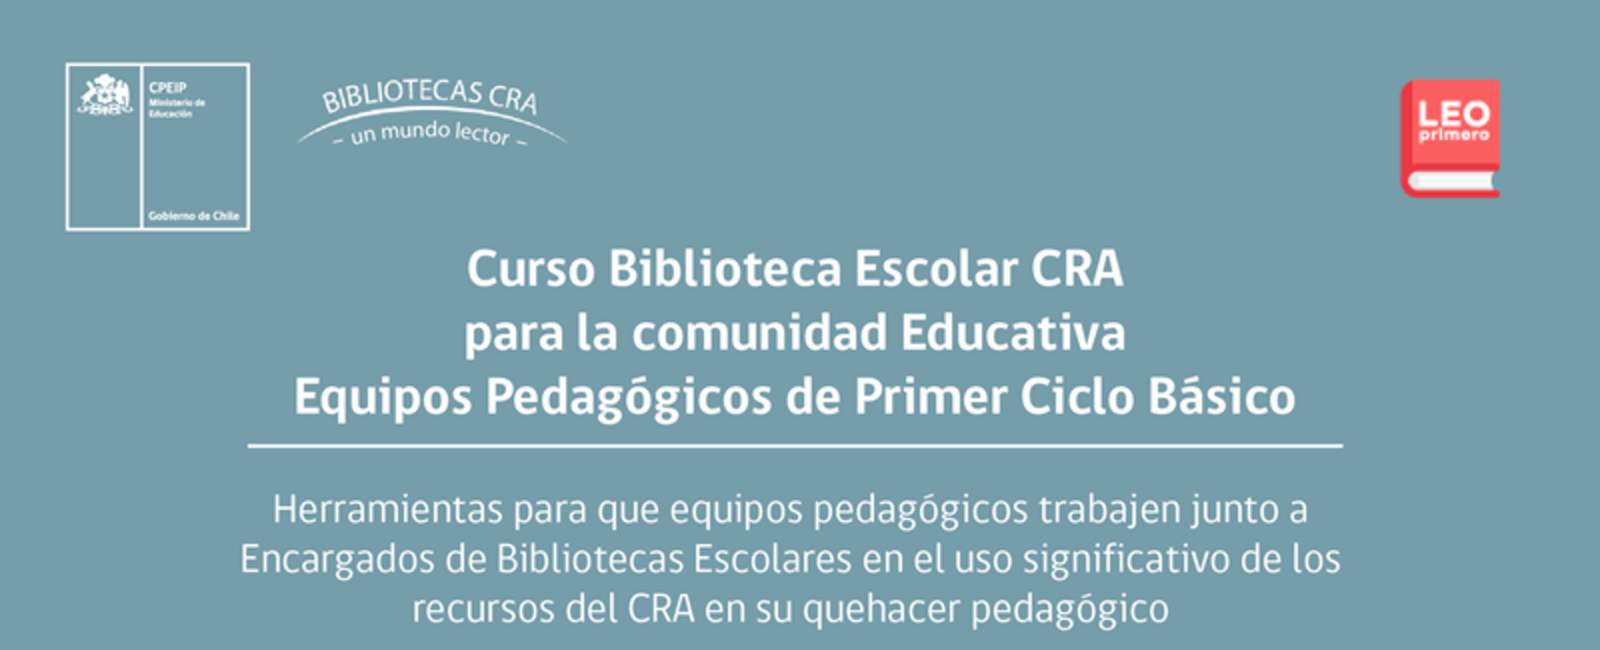 Curso Biblioteca Escolar CRA